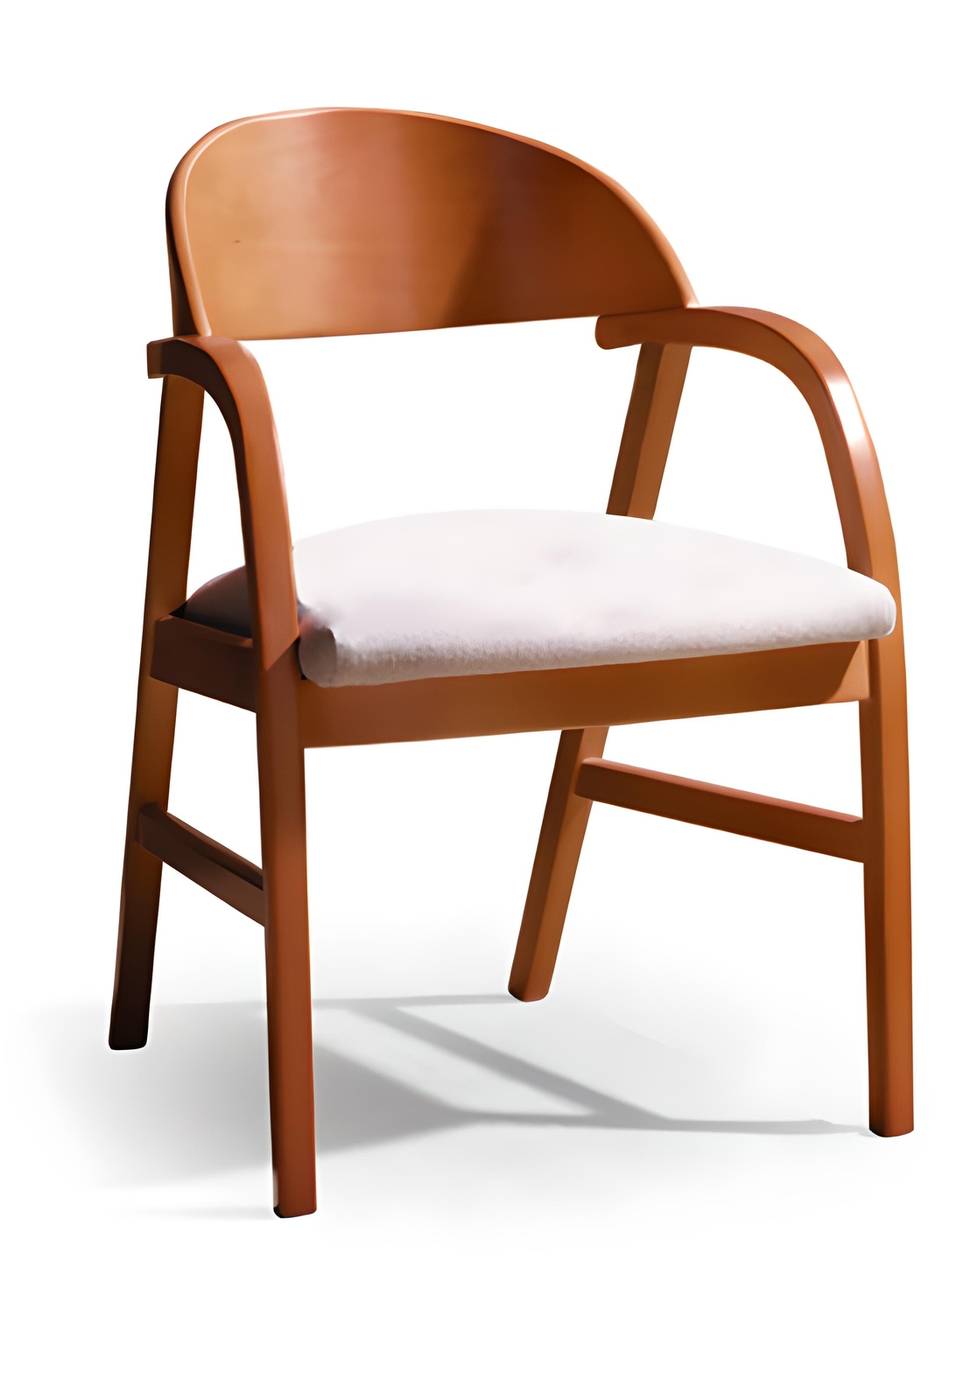 Butaca-sillón de comedor con brazos, de madera de haya maciza. Asiento acolchado tapizado. Disponible en varios colores.